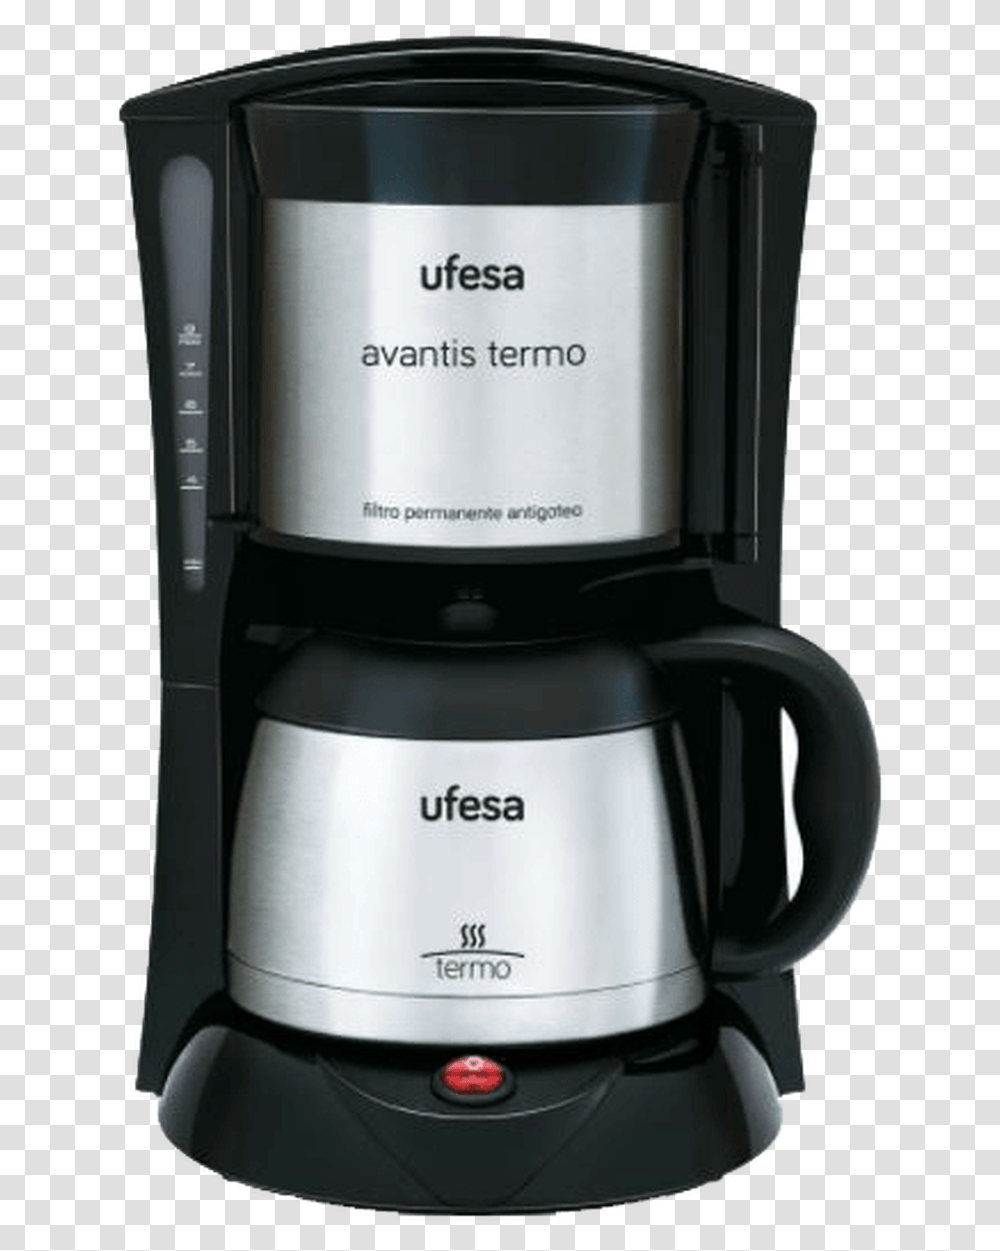 Ufesa Arial Drip Coffee Maker Cg 7236, Mixer, Appliance, Blender Transparent Png